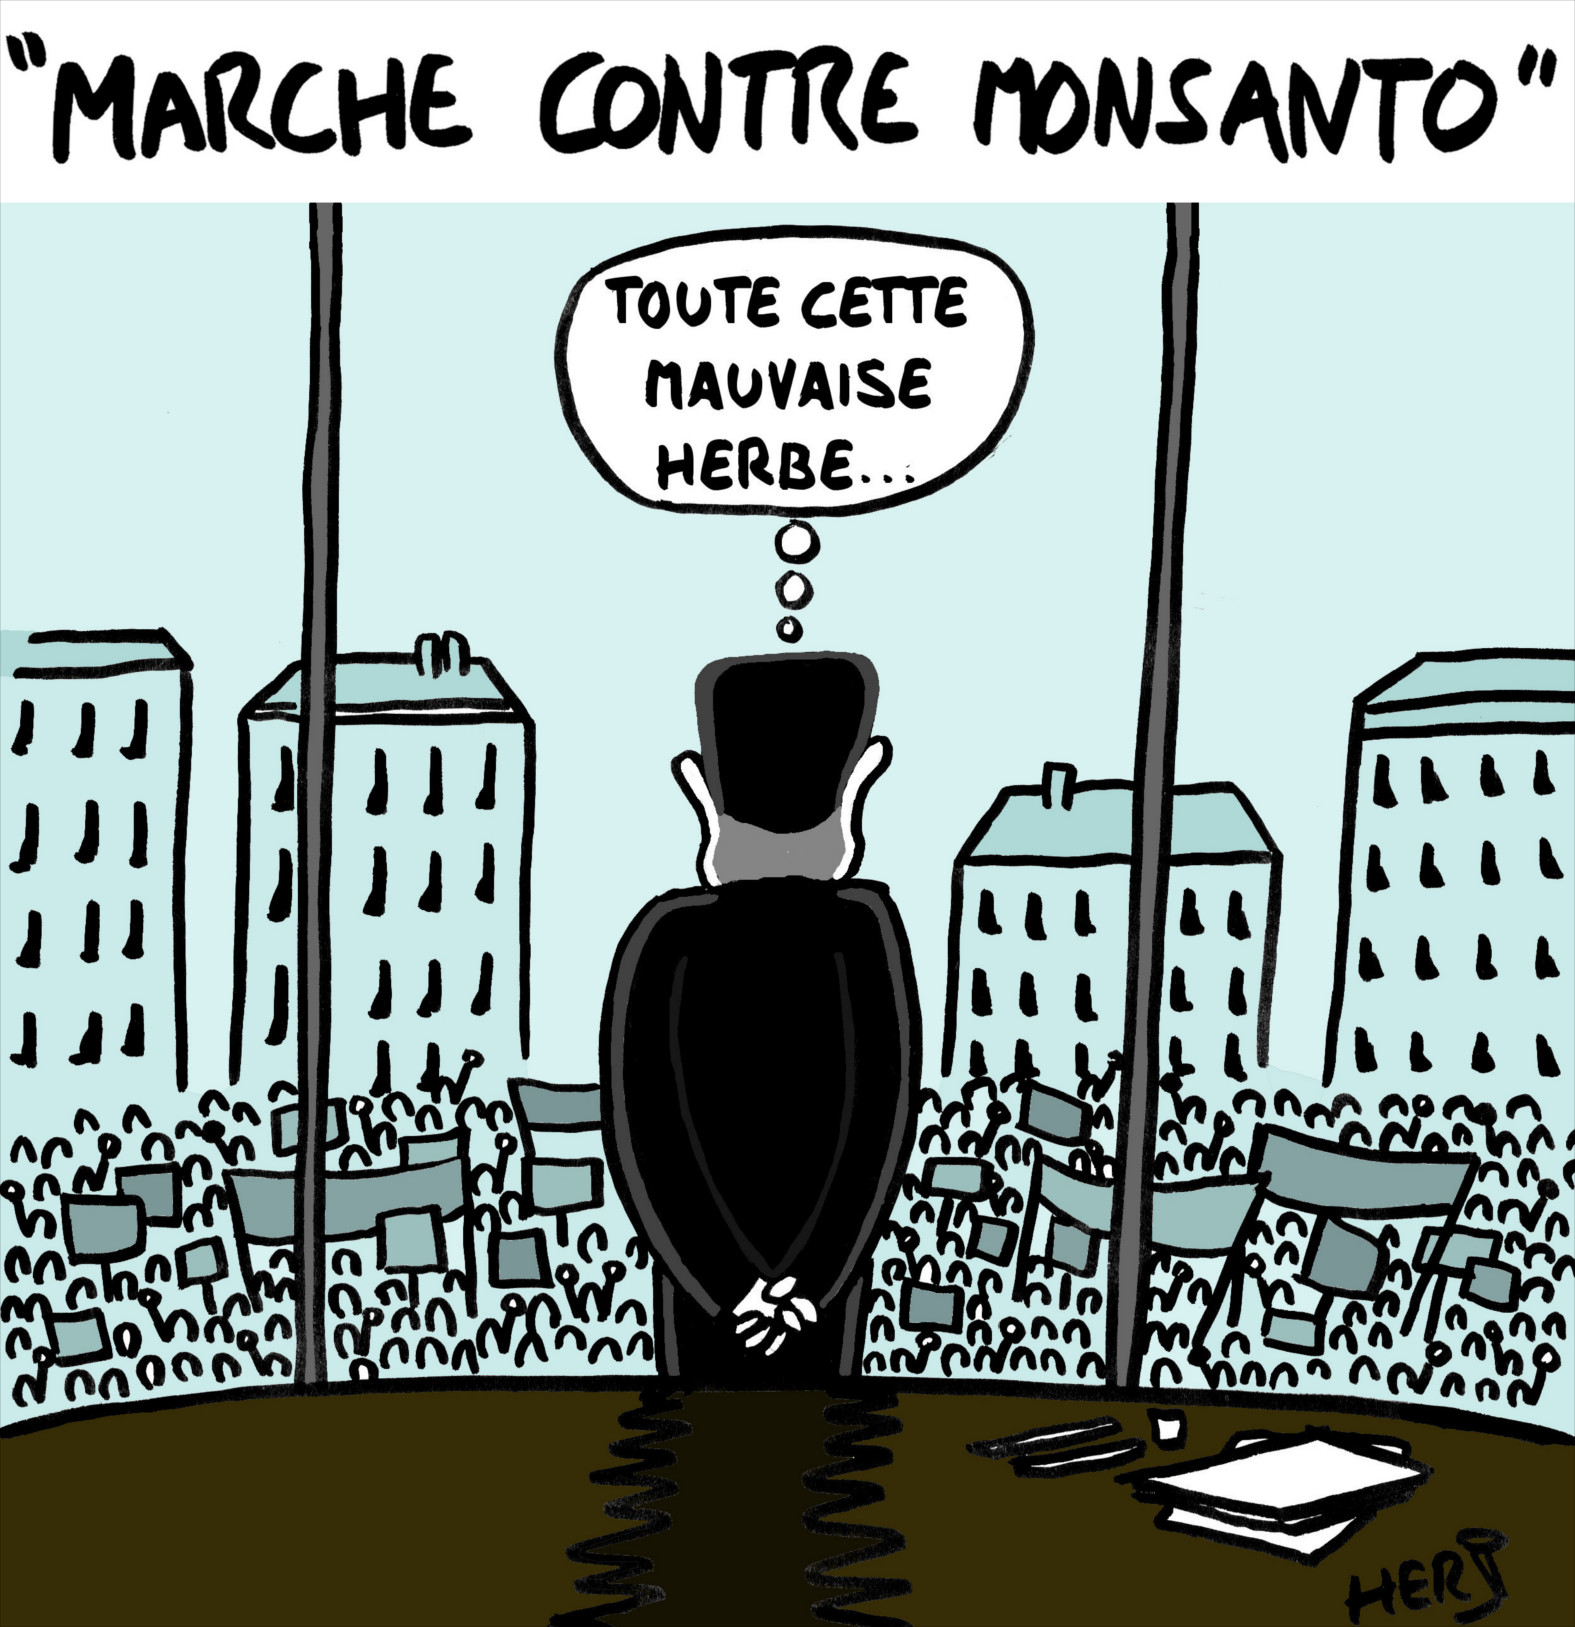 Marche contre Monsanto